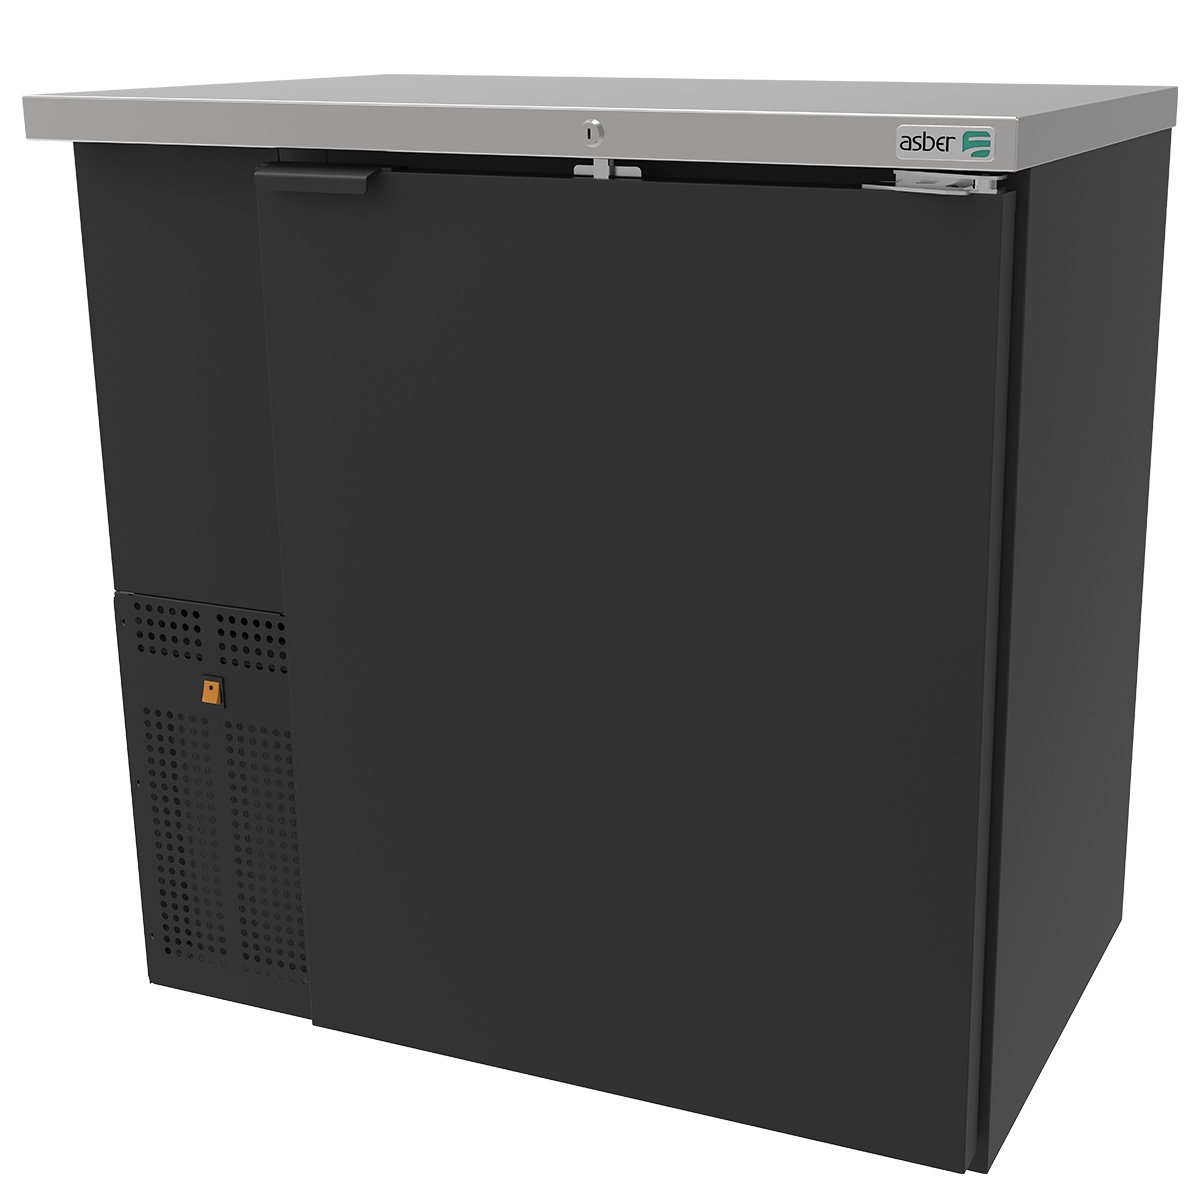 ASBER ABBC-24-36-HC Refrigerador de Contrabarra en Vinil Negro Puerta Solida Envío por Cobrar Refrigeracion ASBER 